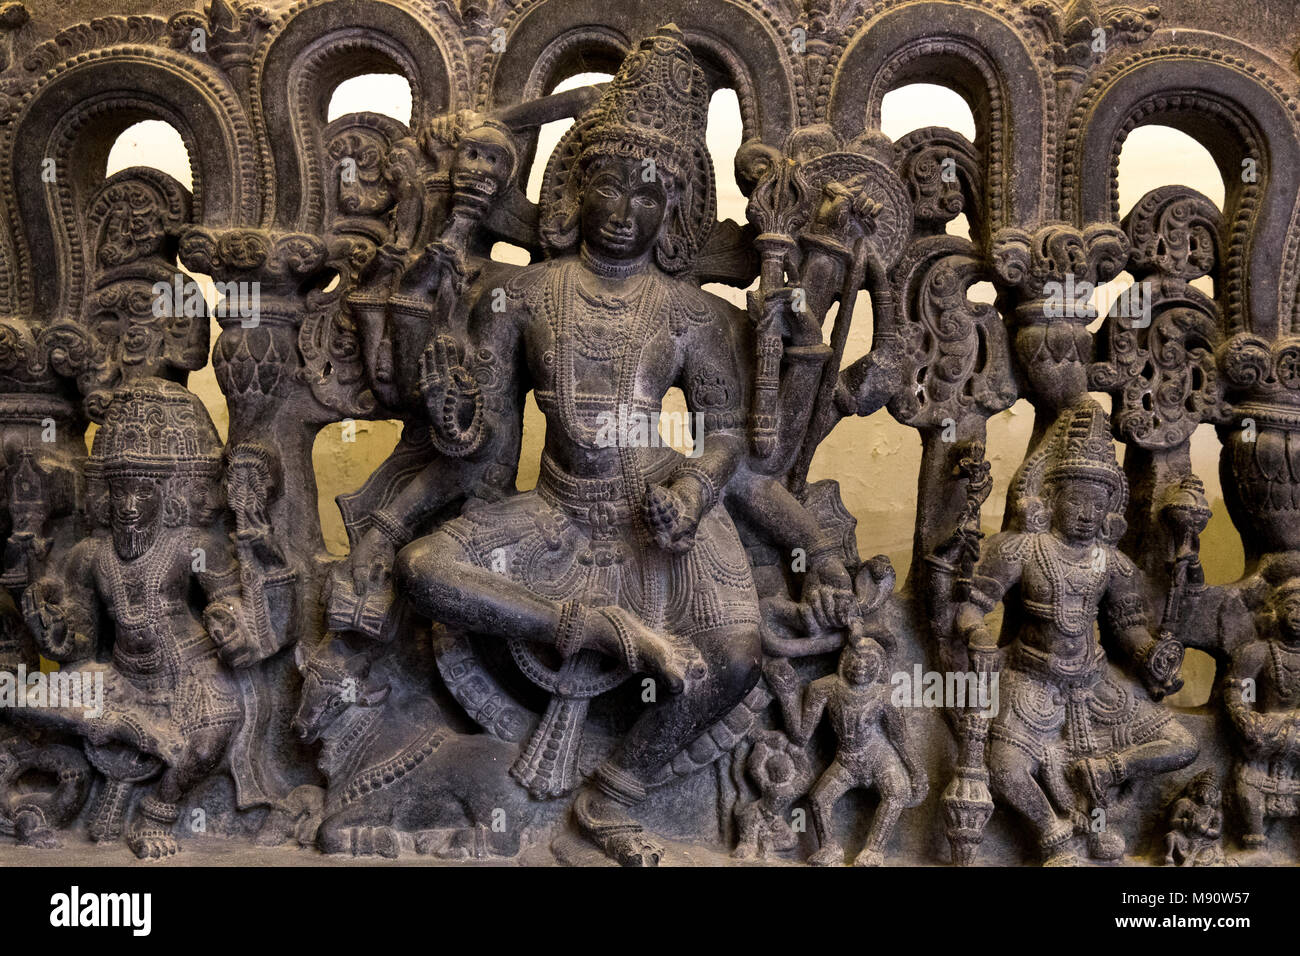 Musée national de l'Inde, Delhi. Linteau montrant trinity (Brahma, Vishnu et Shiva). Kakatiya, 12ème siècle A.D. Warangal, Andhra Pradesh. Pierre. Toute information Banque D'Images